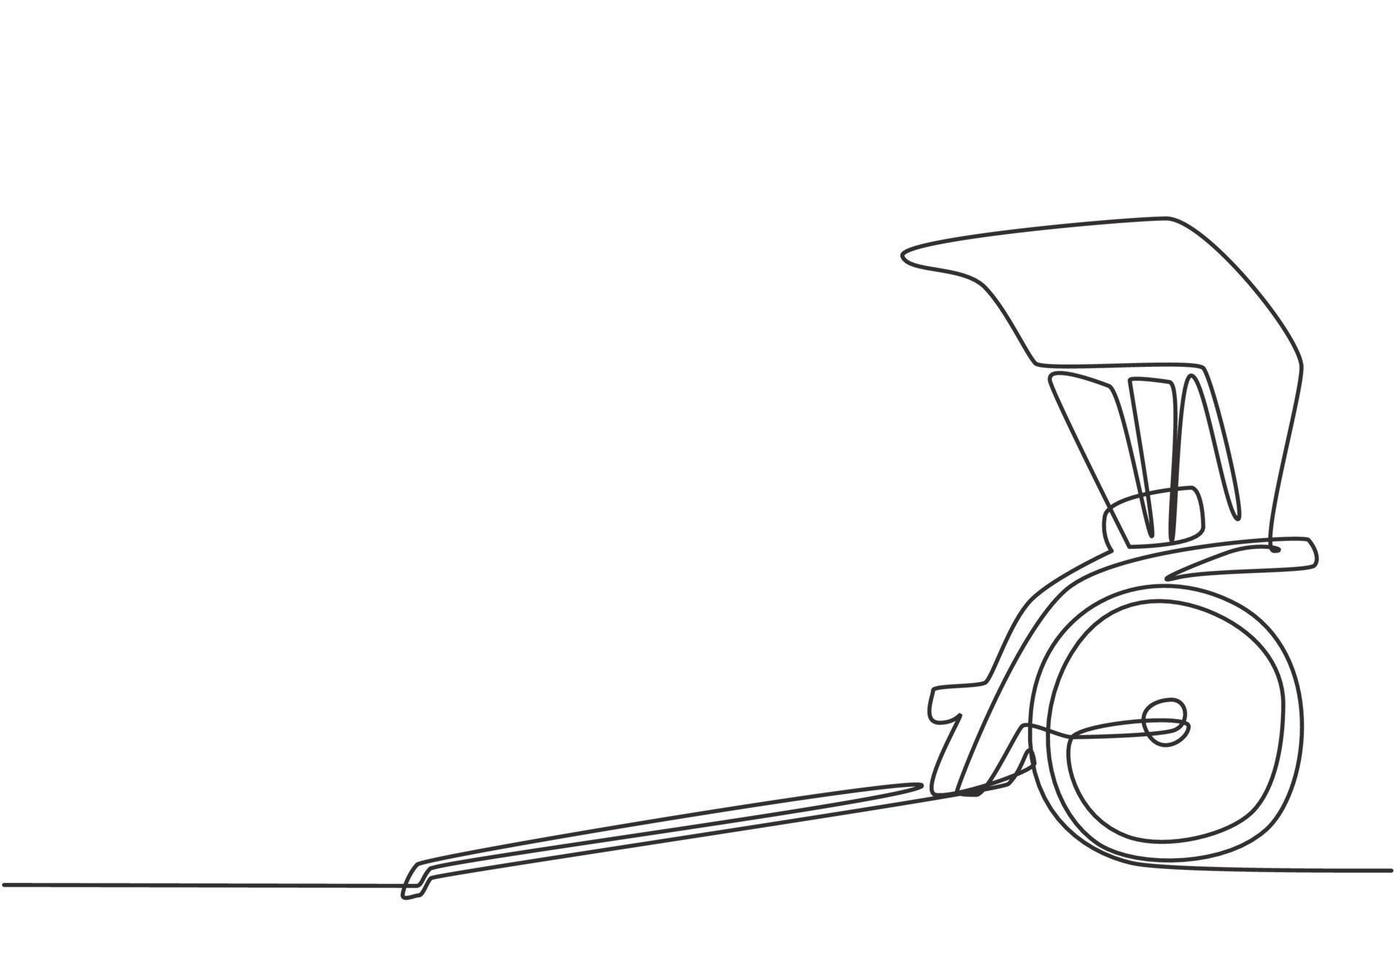 Um único desenho de linha contínua puxava o riquixá da lateral, um veículo antigo na China e no Japão com duas rodas e puxado por humanos. dinâmica de uma linha desenhar ilustração em vetor design gráfico.